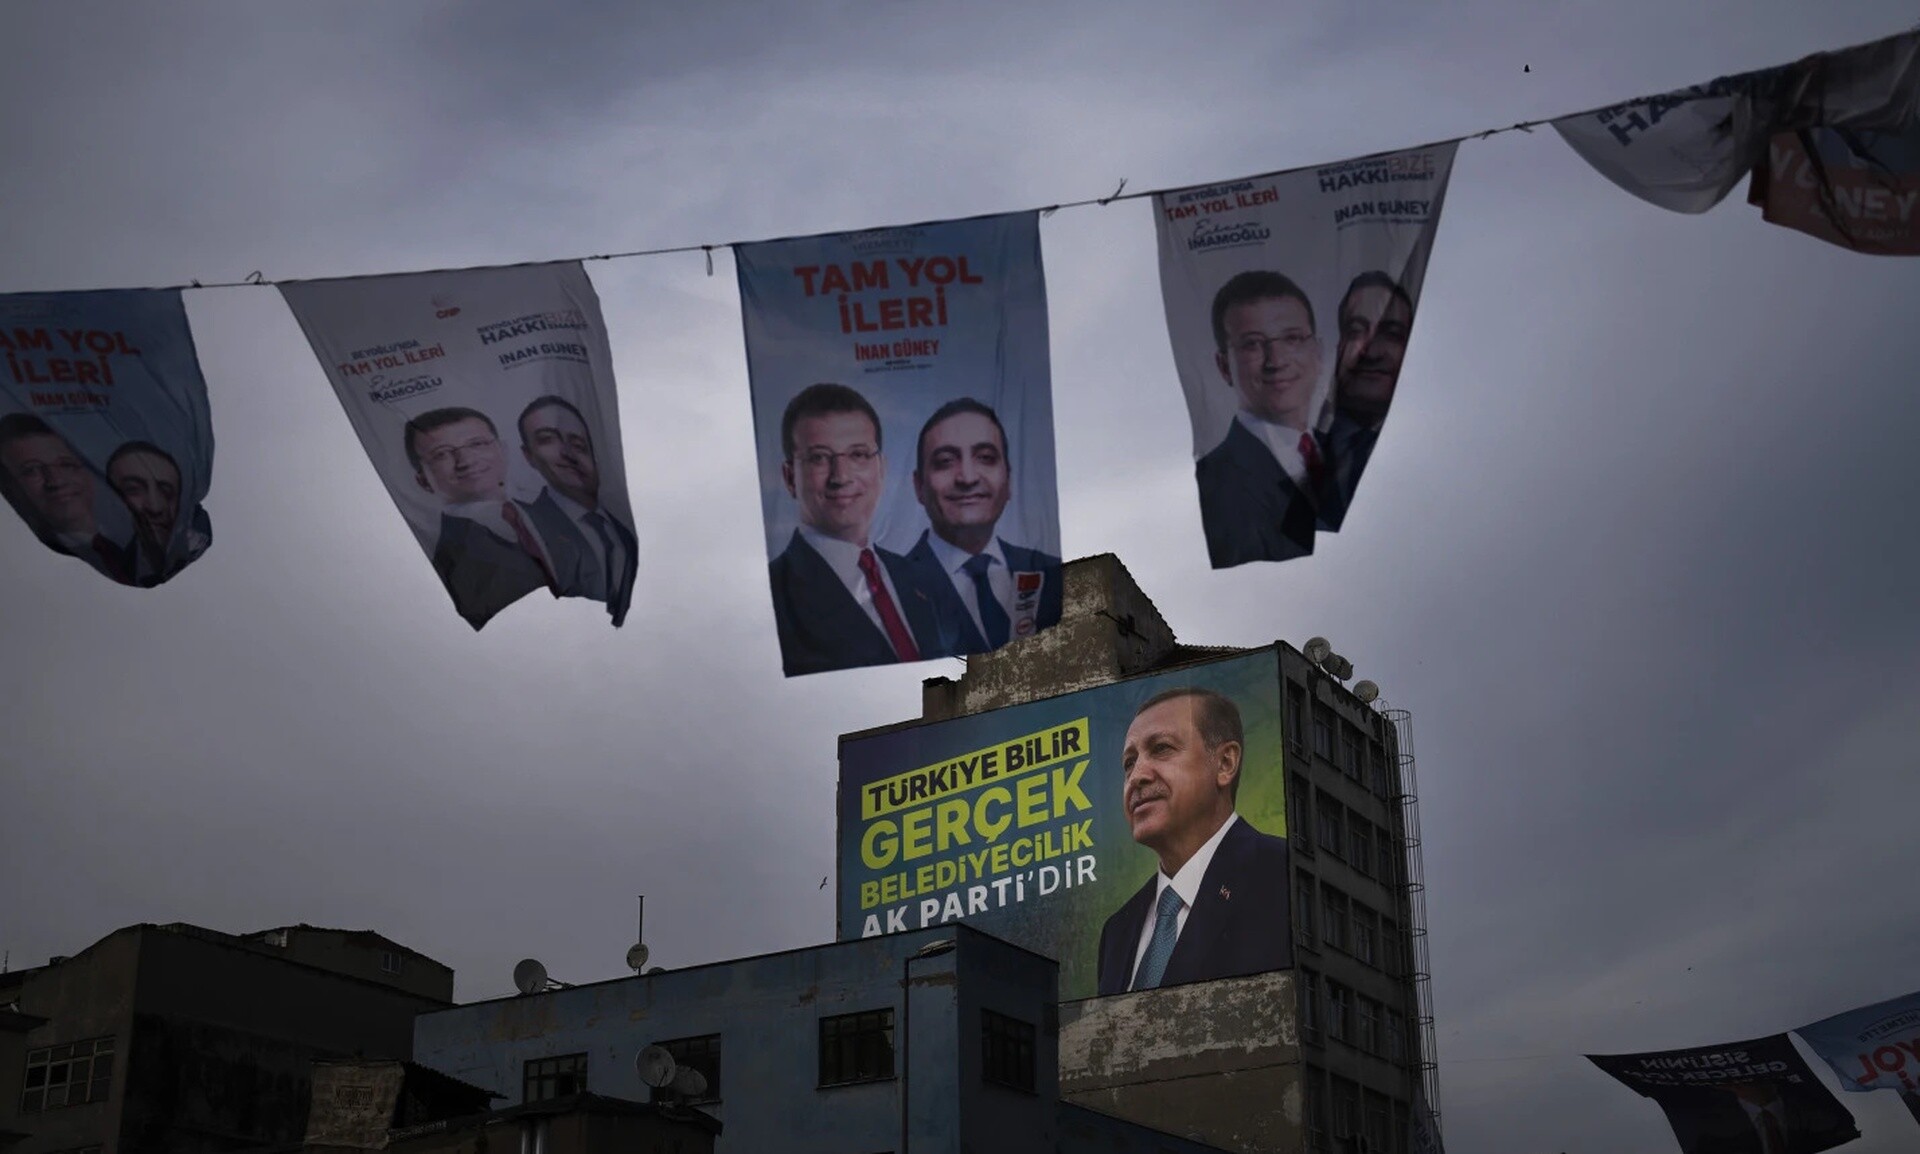 Δημοτικές εκλογές στην Τουρκία: Το σκληρό μπρα ντε φερ Ερντογάν-Ιμάμογλου στην Κωνσταντινούπολη